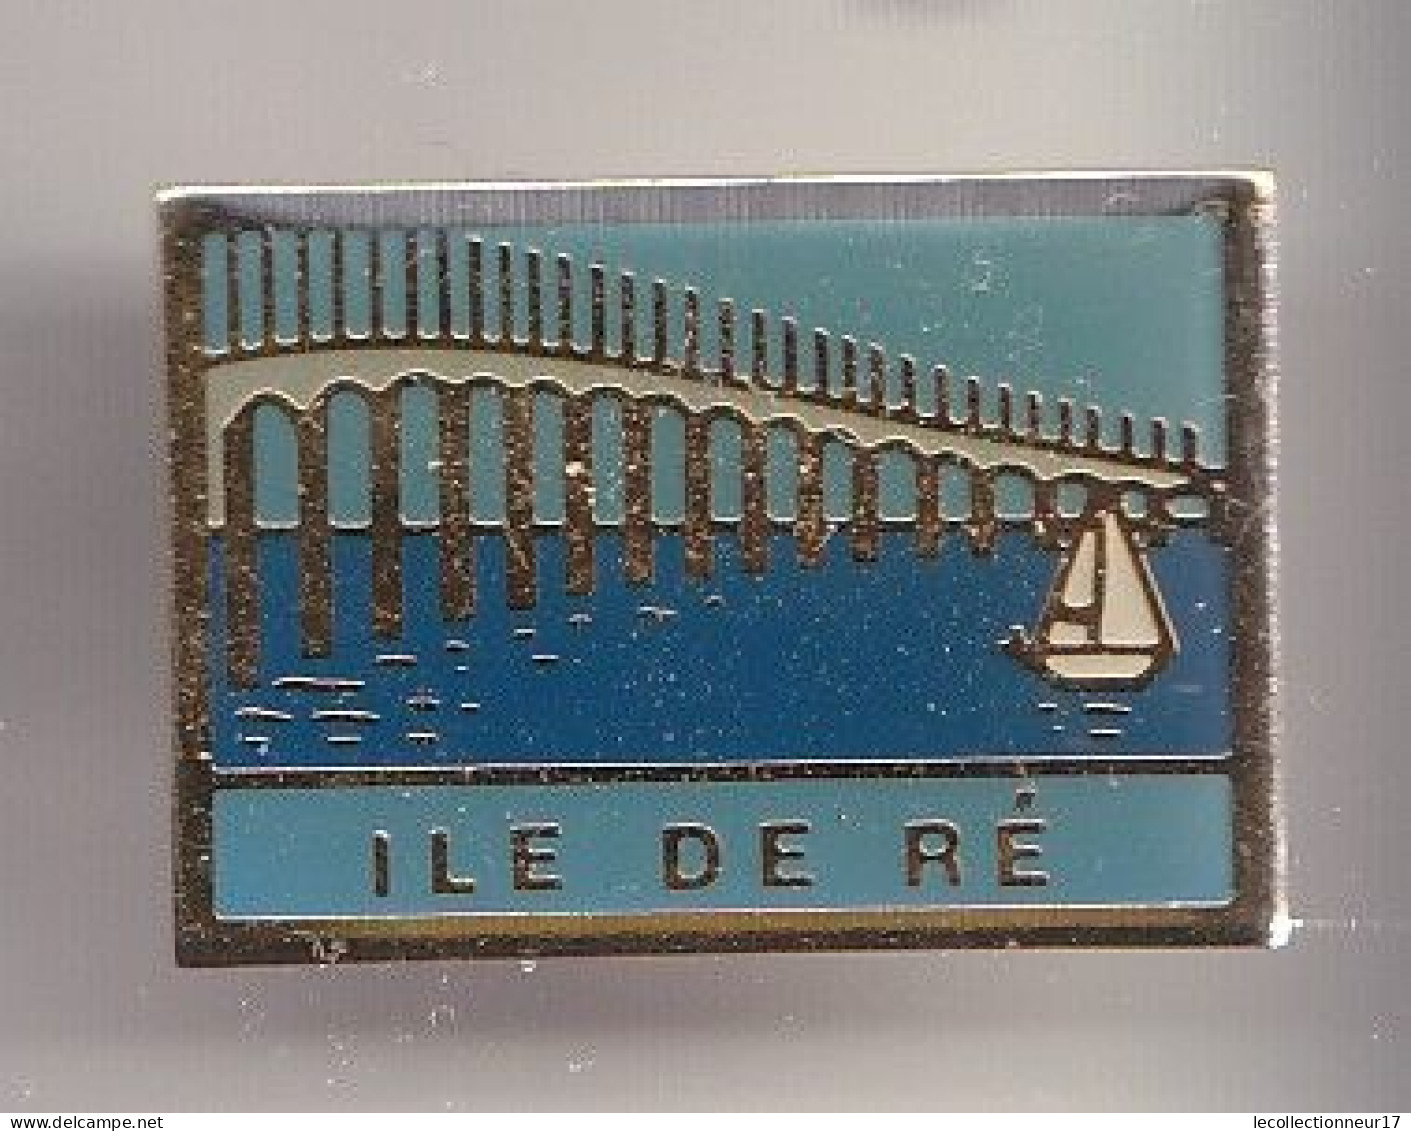 Pin's Ile De Ré En Charente Maritime Dpt 17  Réf 8328 - Villes